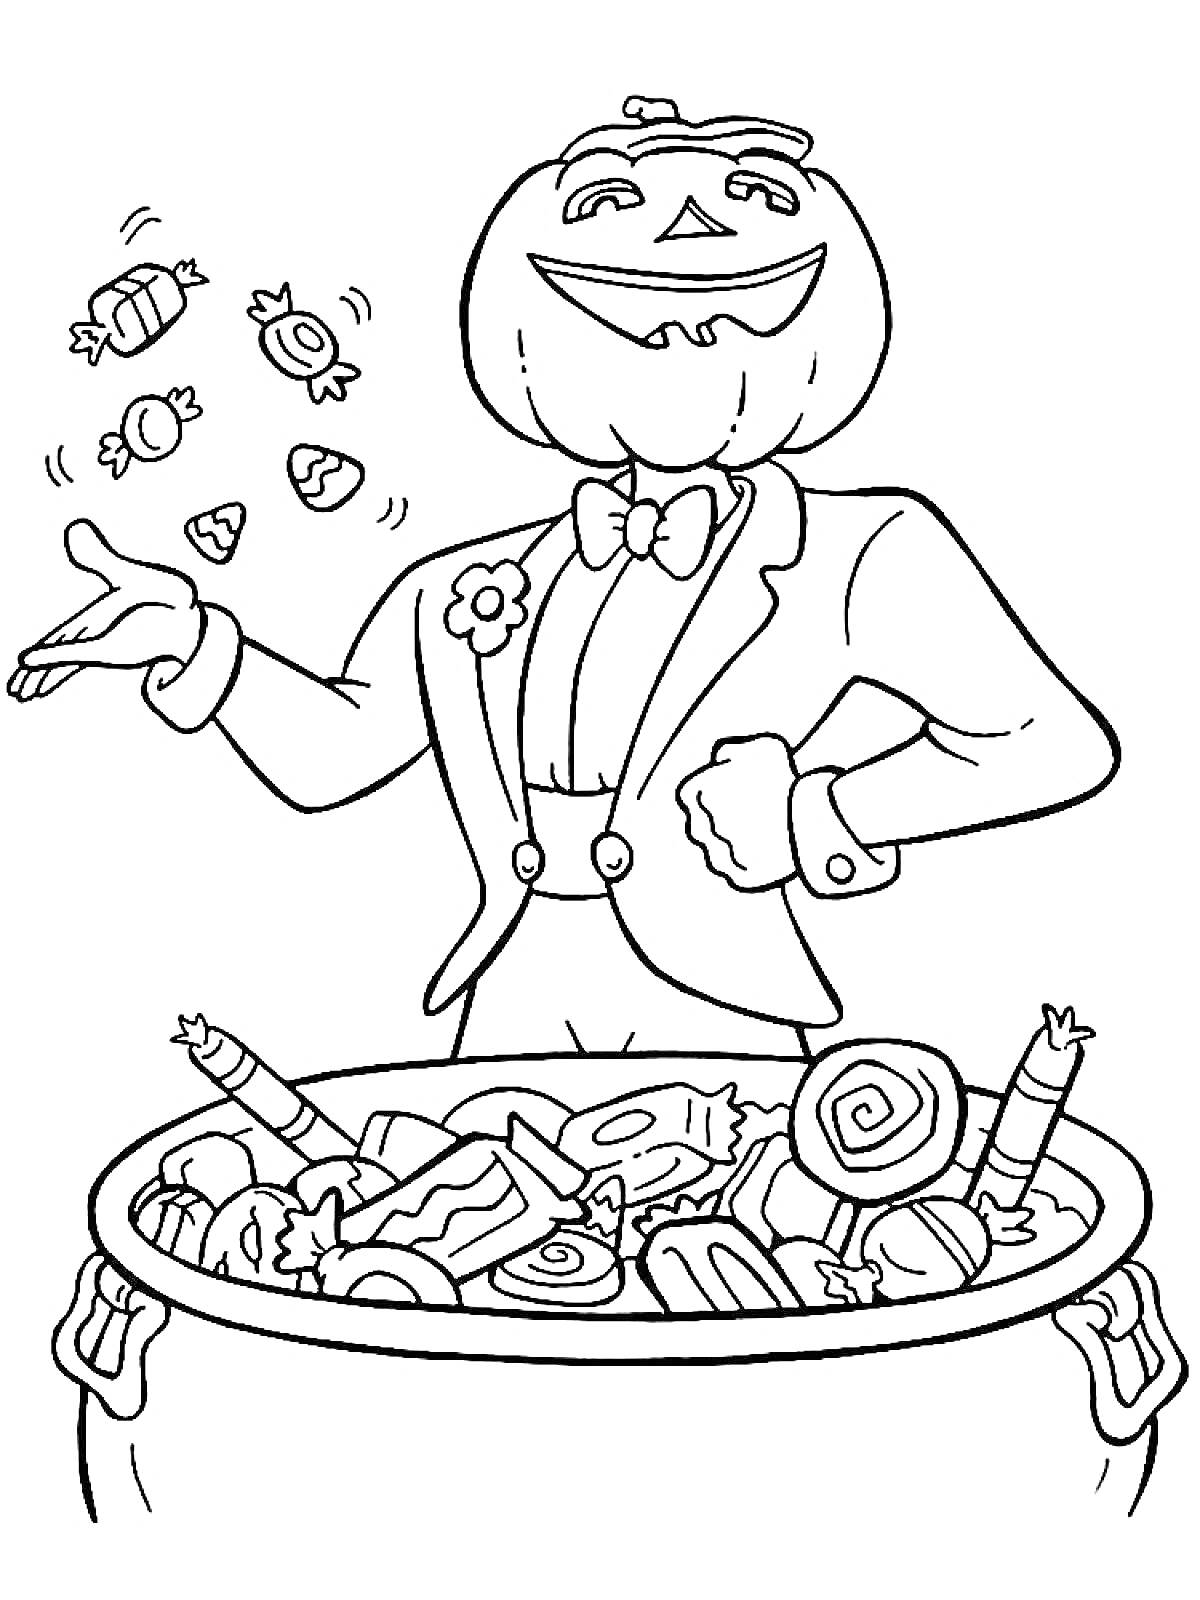 Раскраска Человек с тыквенной головой в костюме, зачерпывающий конфеты из котла